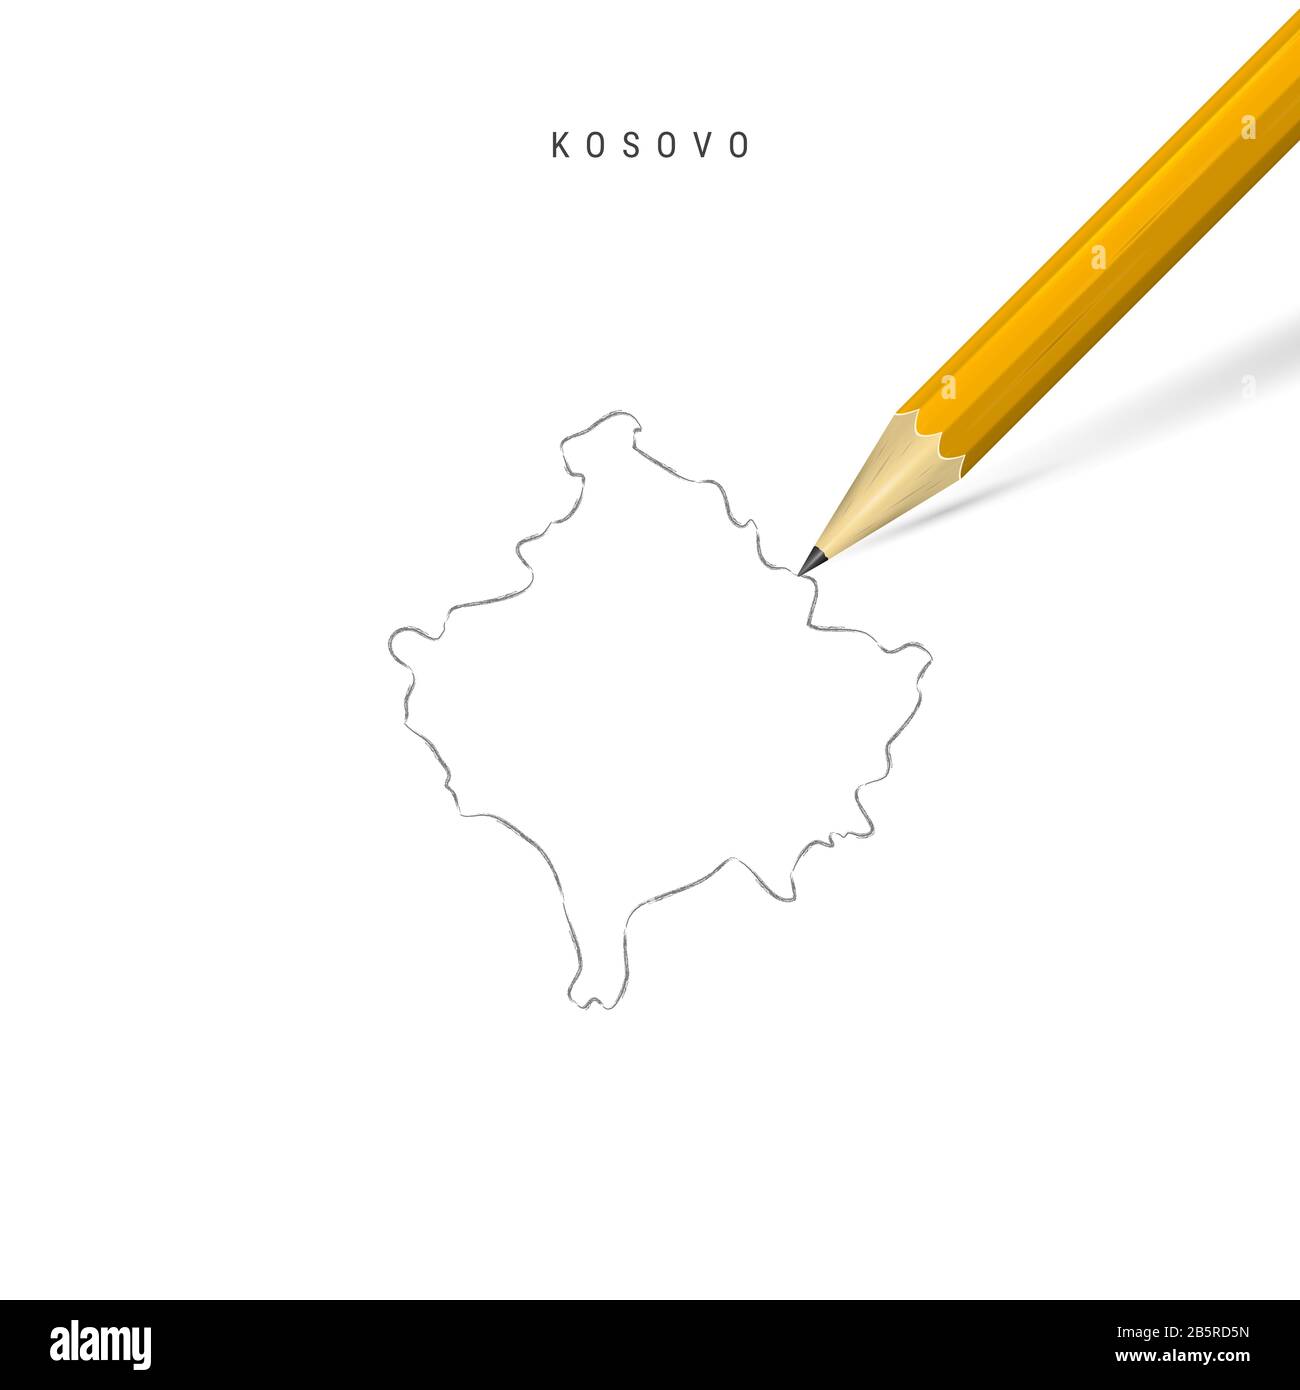 Kossovo a mano libera matita schizzo mappa contorno isolato su sfondo bianco. Mappa vuota del Kosovo disegnata a mano. Matita 3D realistica con ombra morbida. Foto Stock